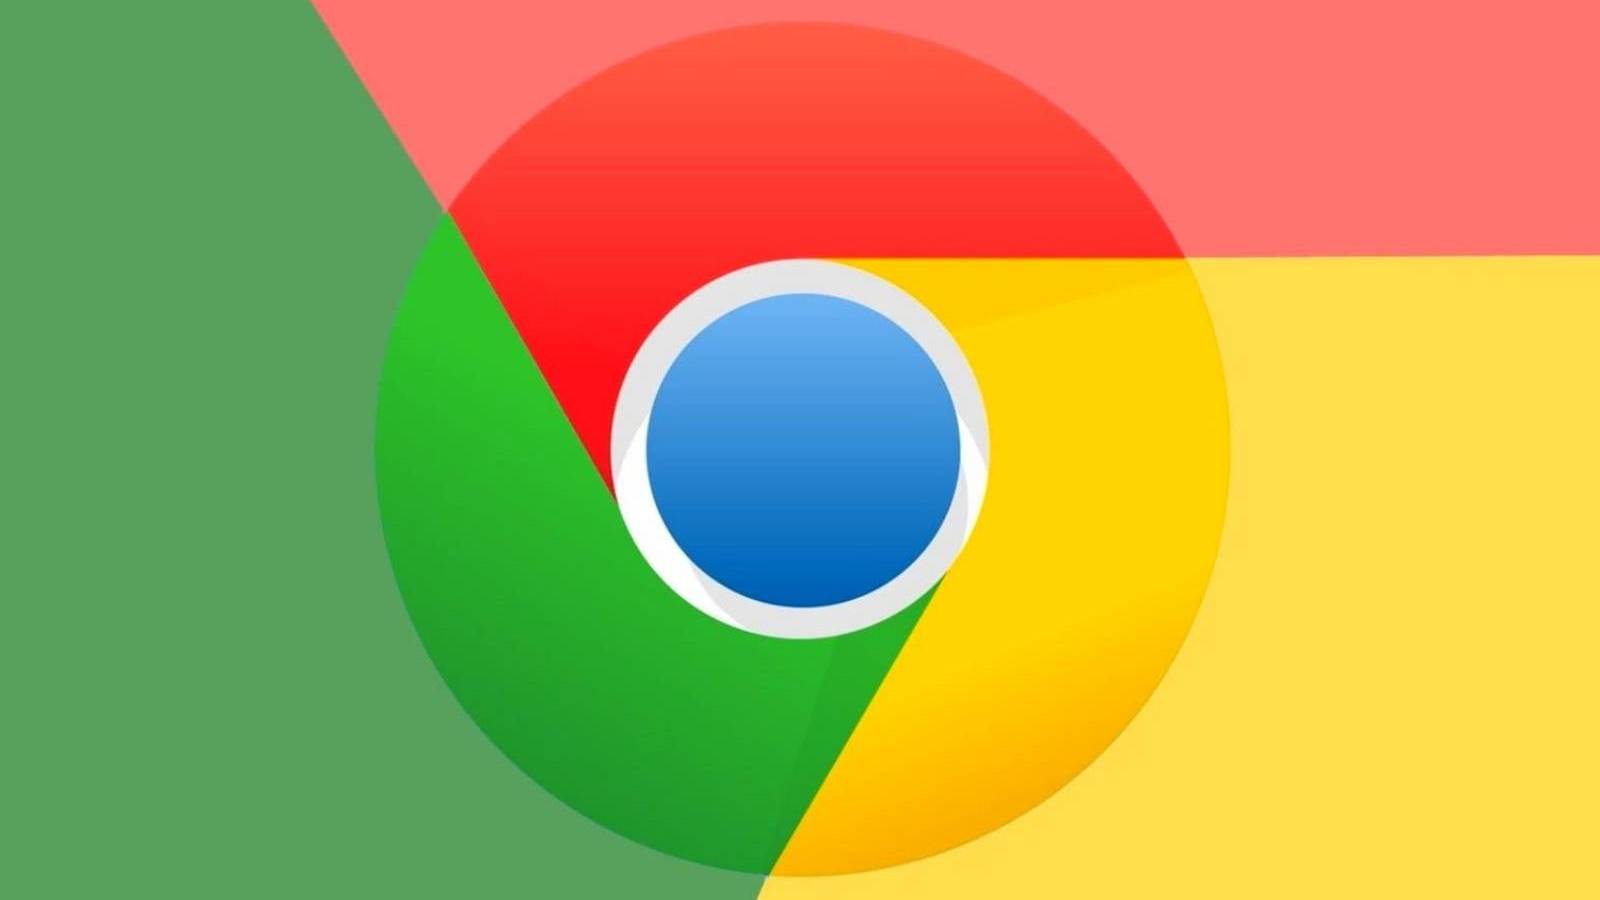 Google Chrome Update Lansat pentru Telefoane si Tablete, ce Noutati Aduce